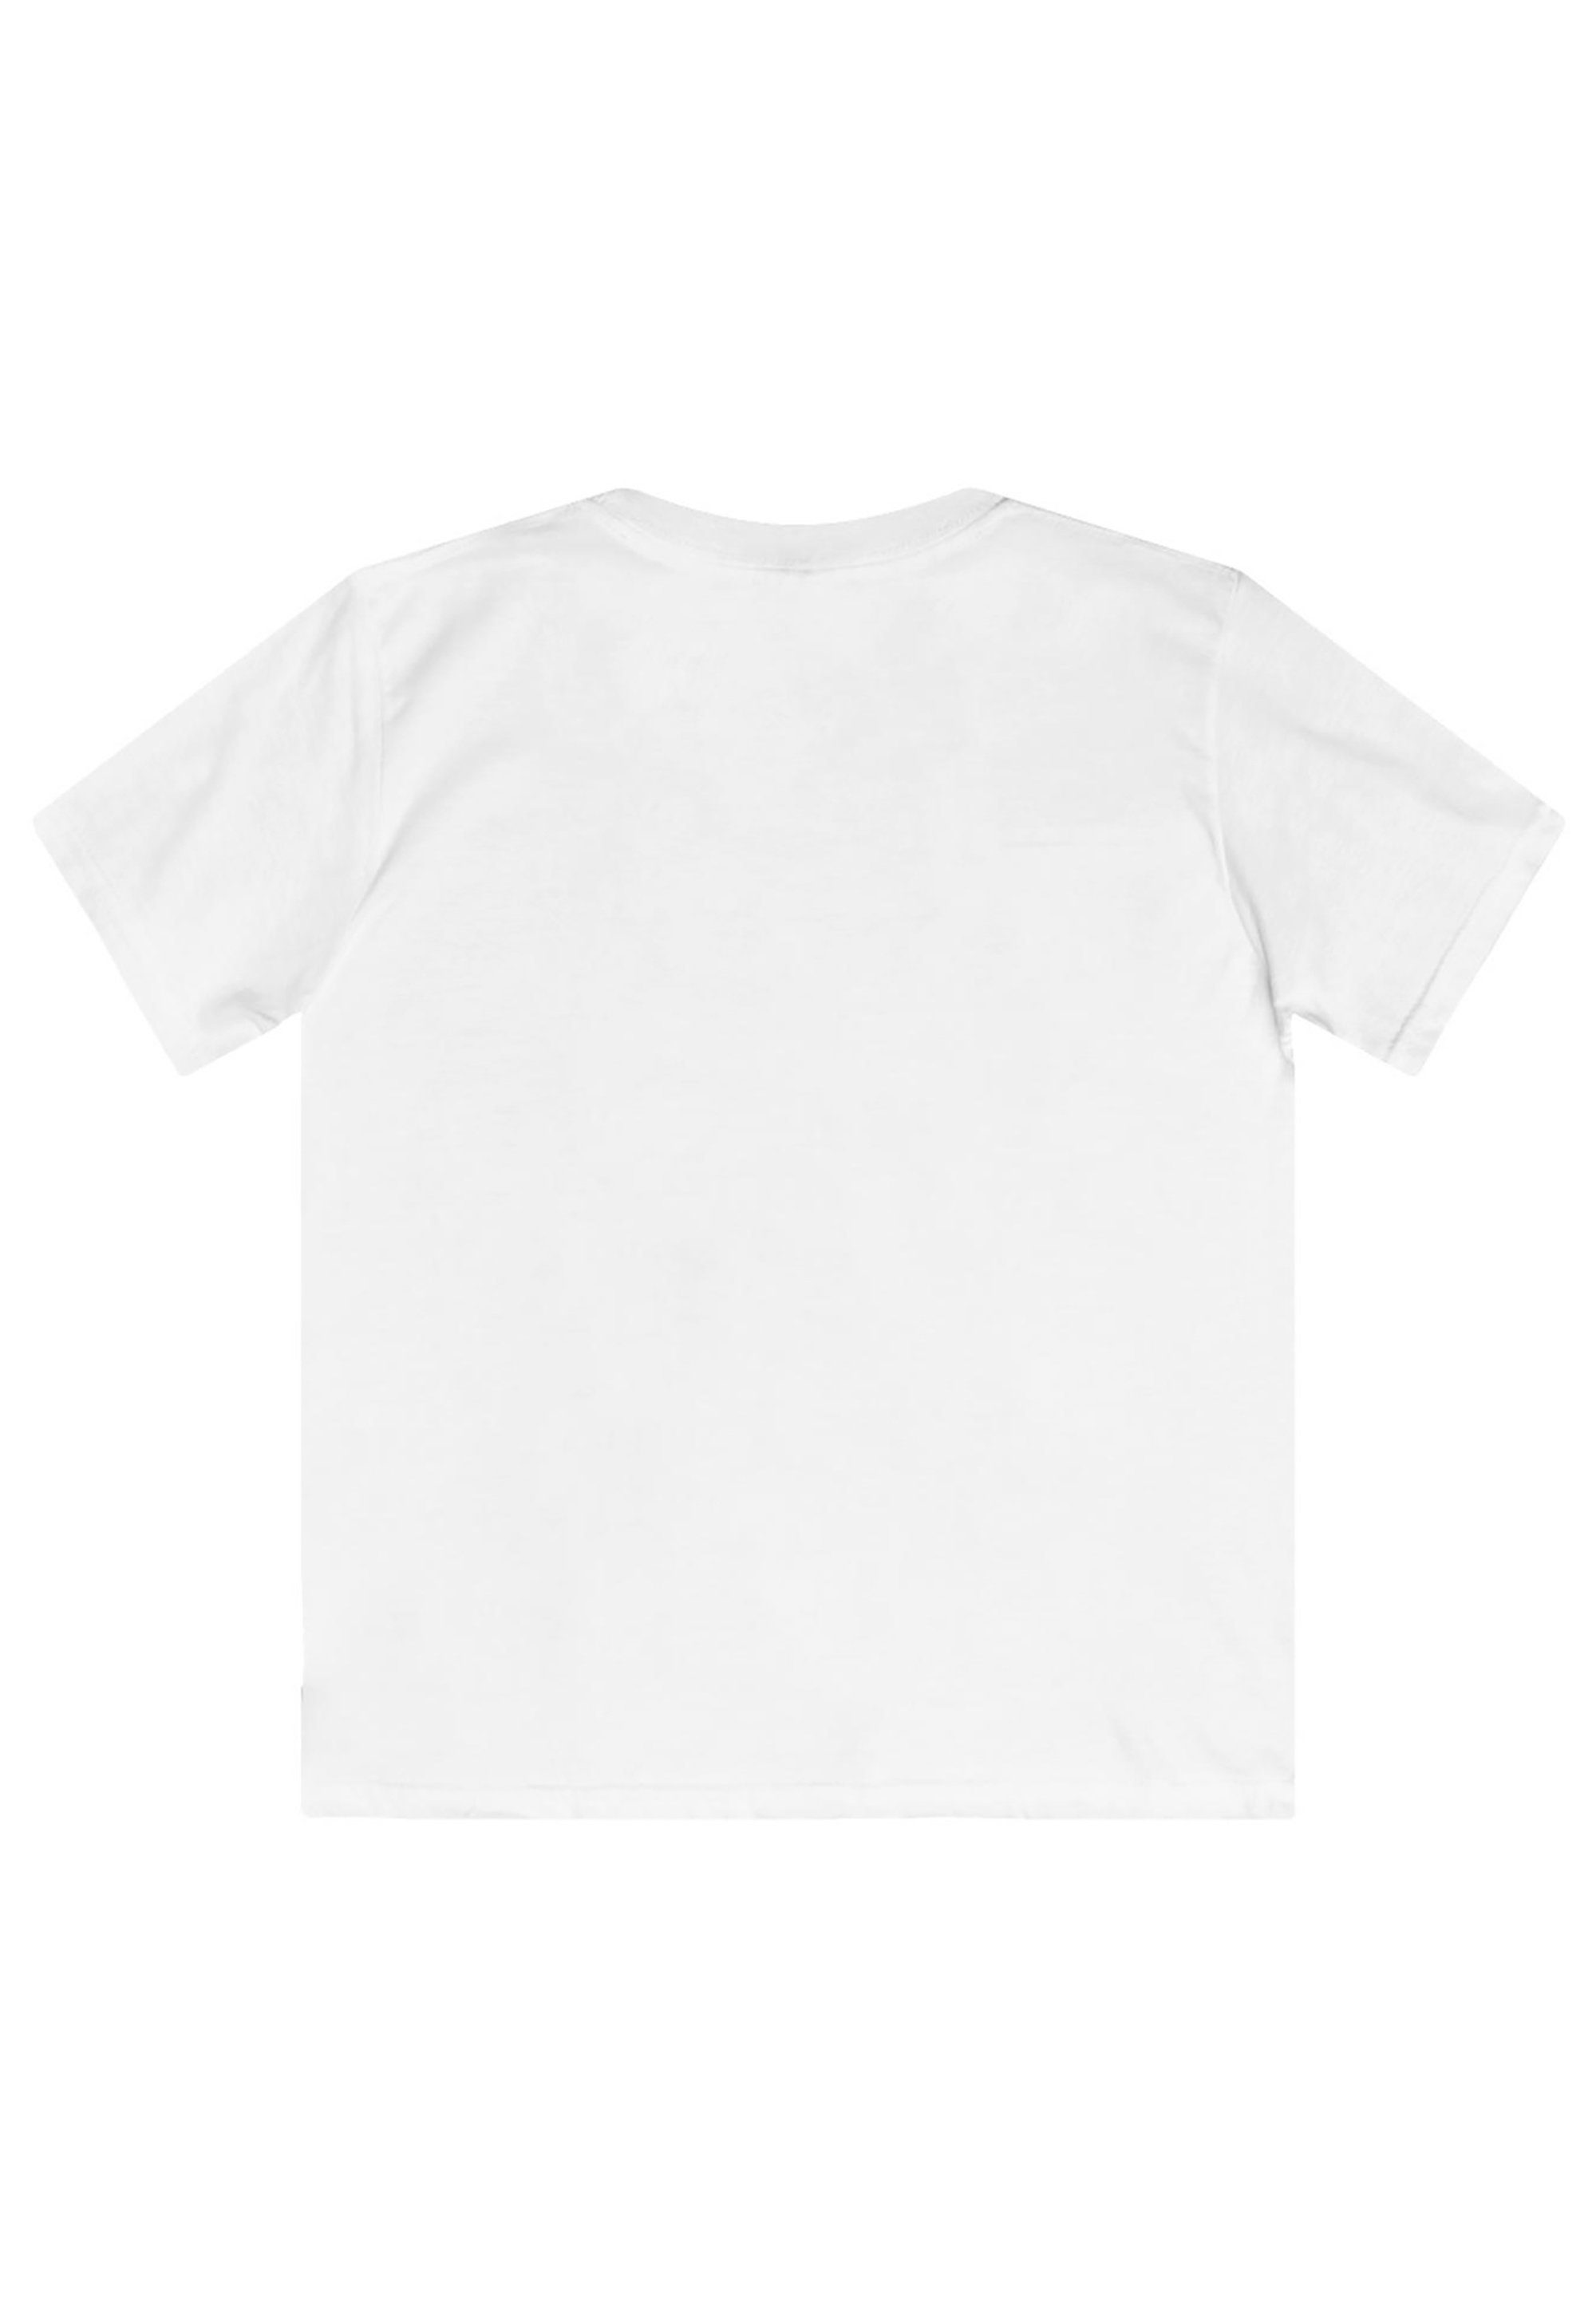 Weihnachten weiß Arielle T-Shirt F4NT4STIC die Print Meerjungfrau